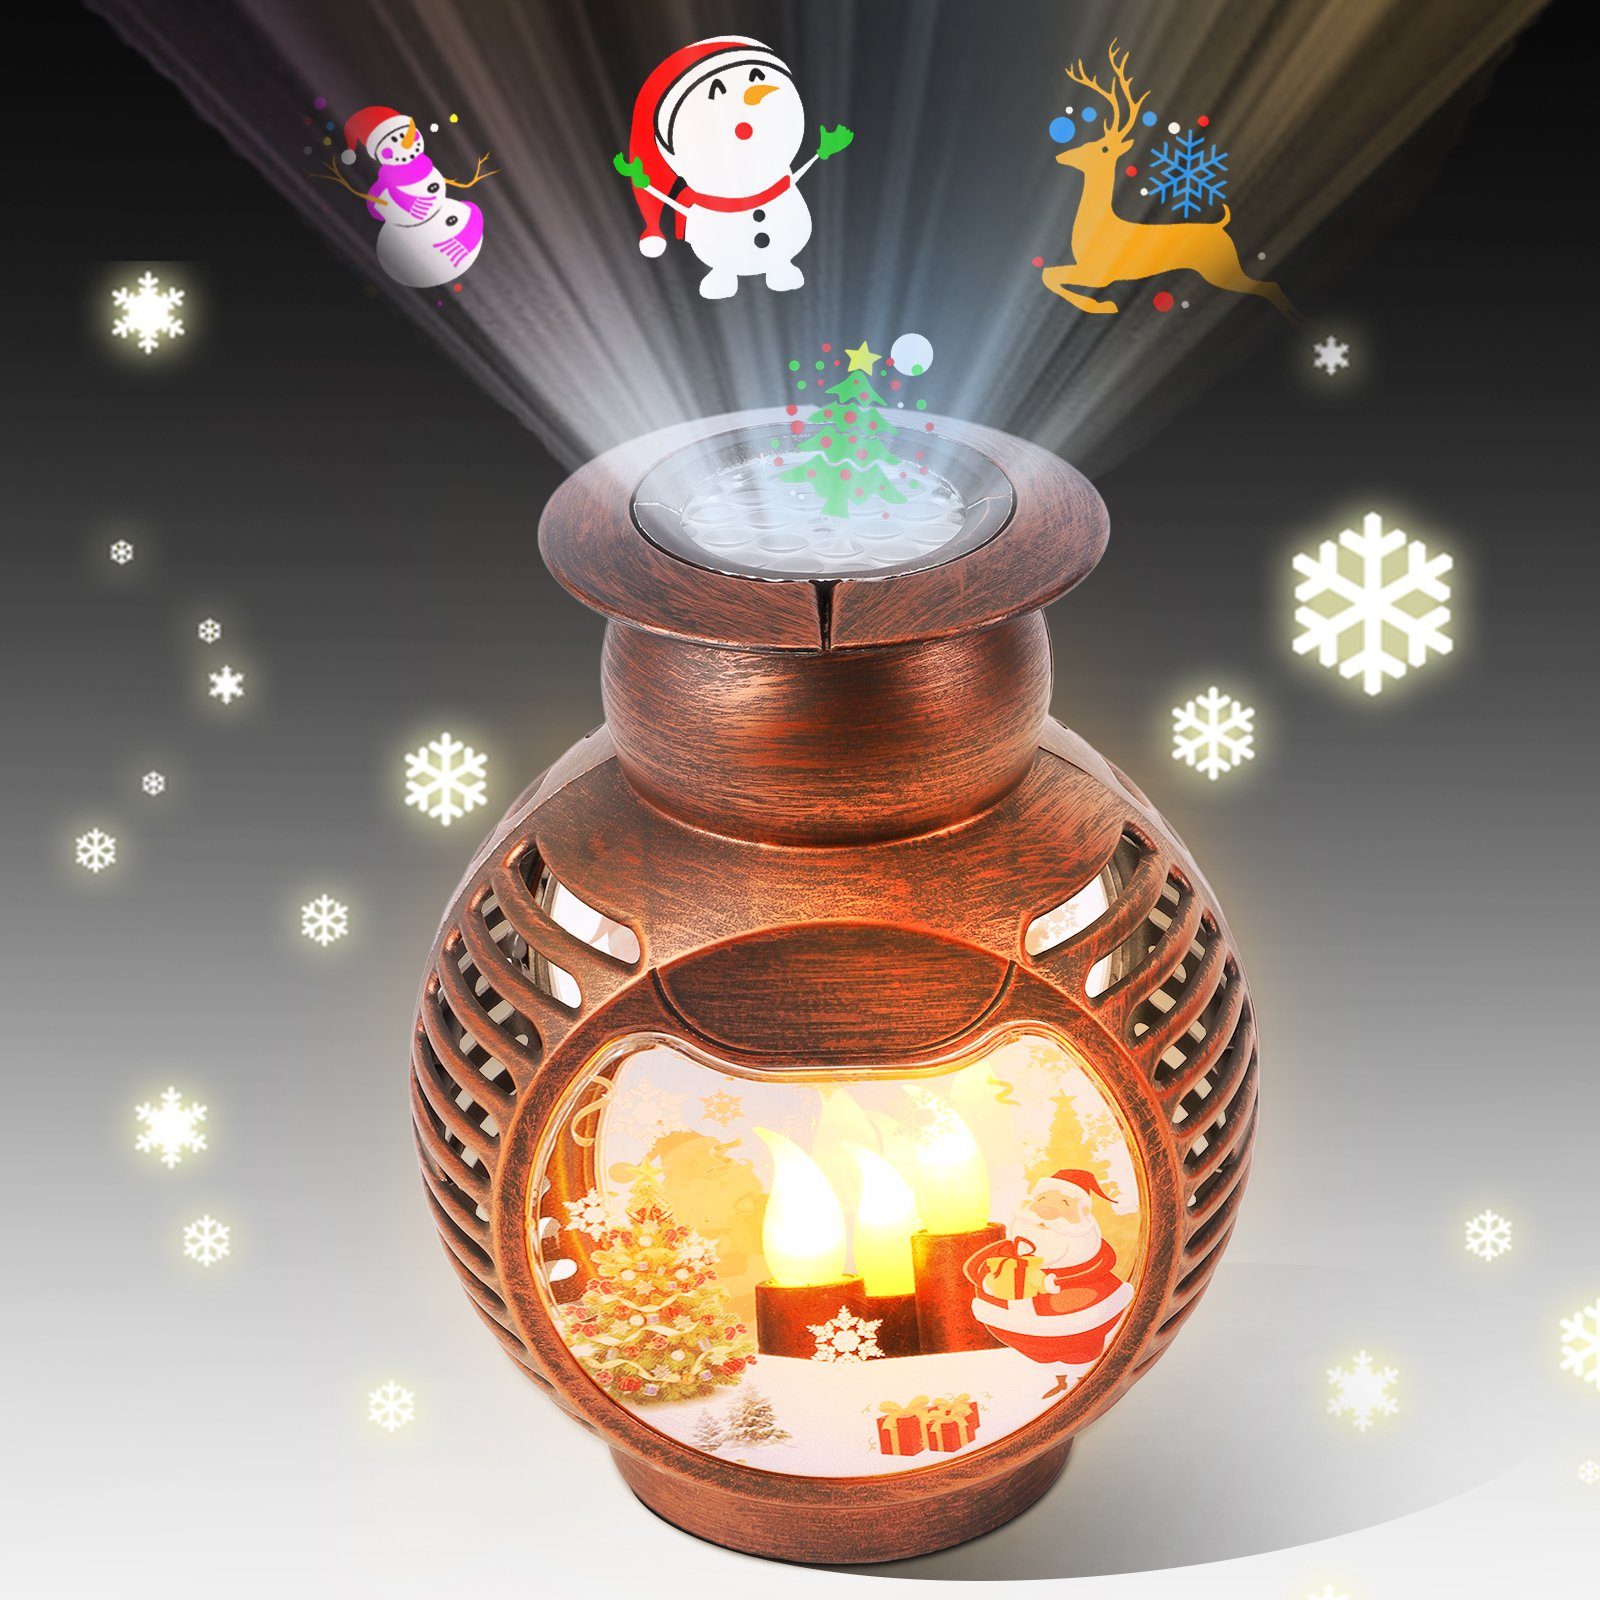 LED Nachtlicht Kinder personalisiert - Schneekugel Weihnachten